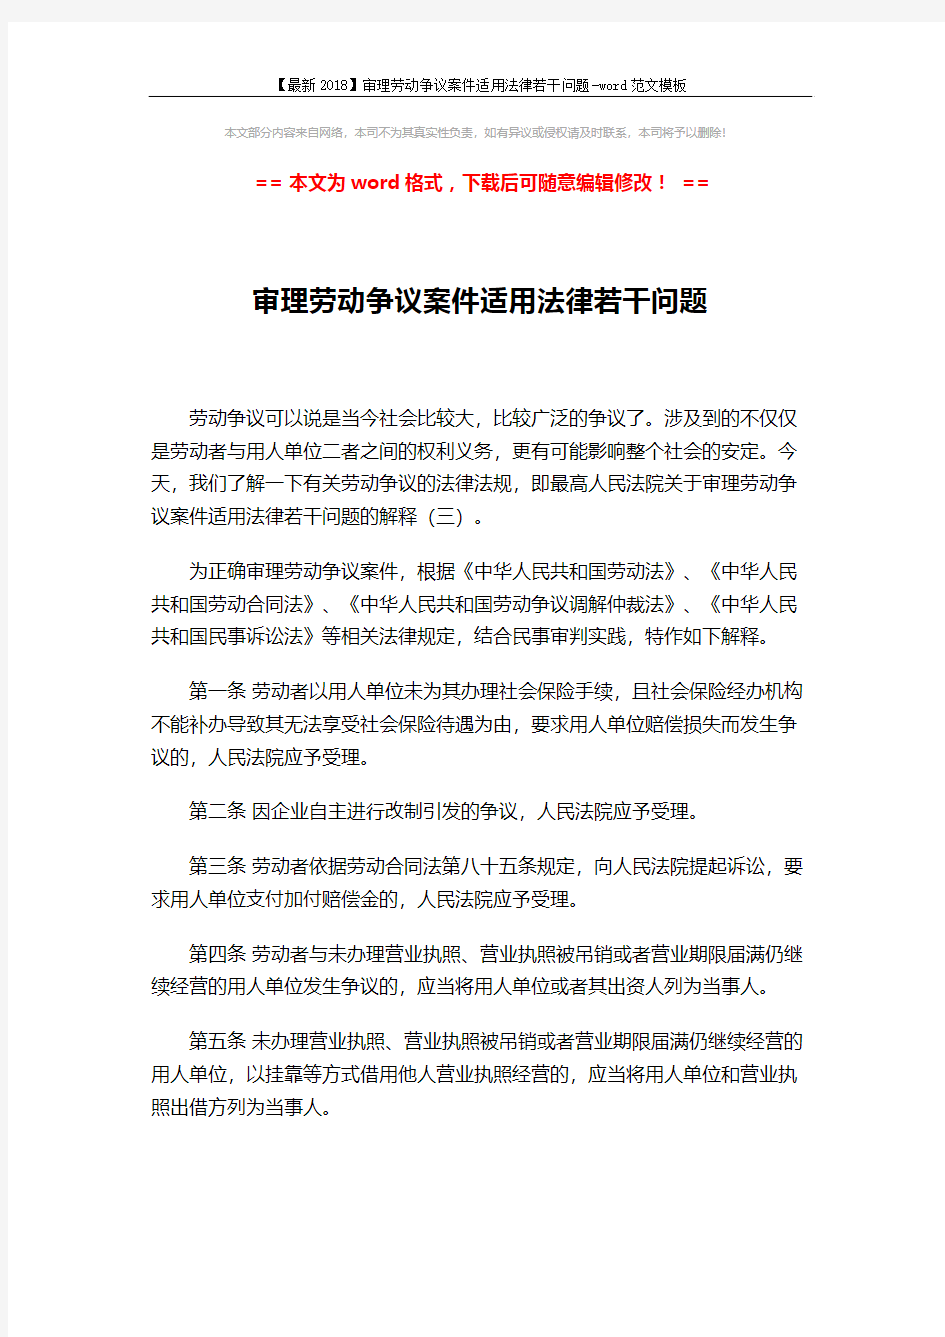 【最新2018】审理劳动争议案件适用法律若干问题-word范文模板 (4页)